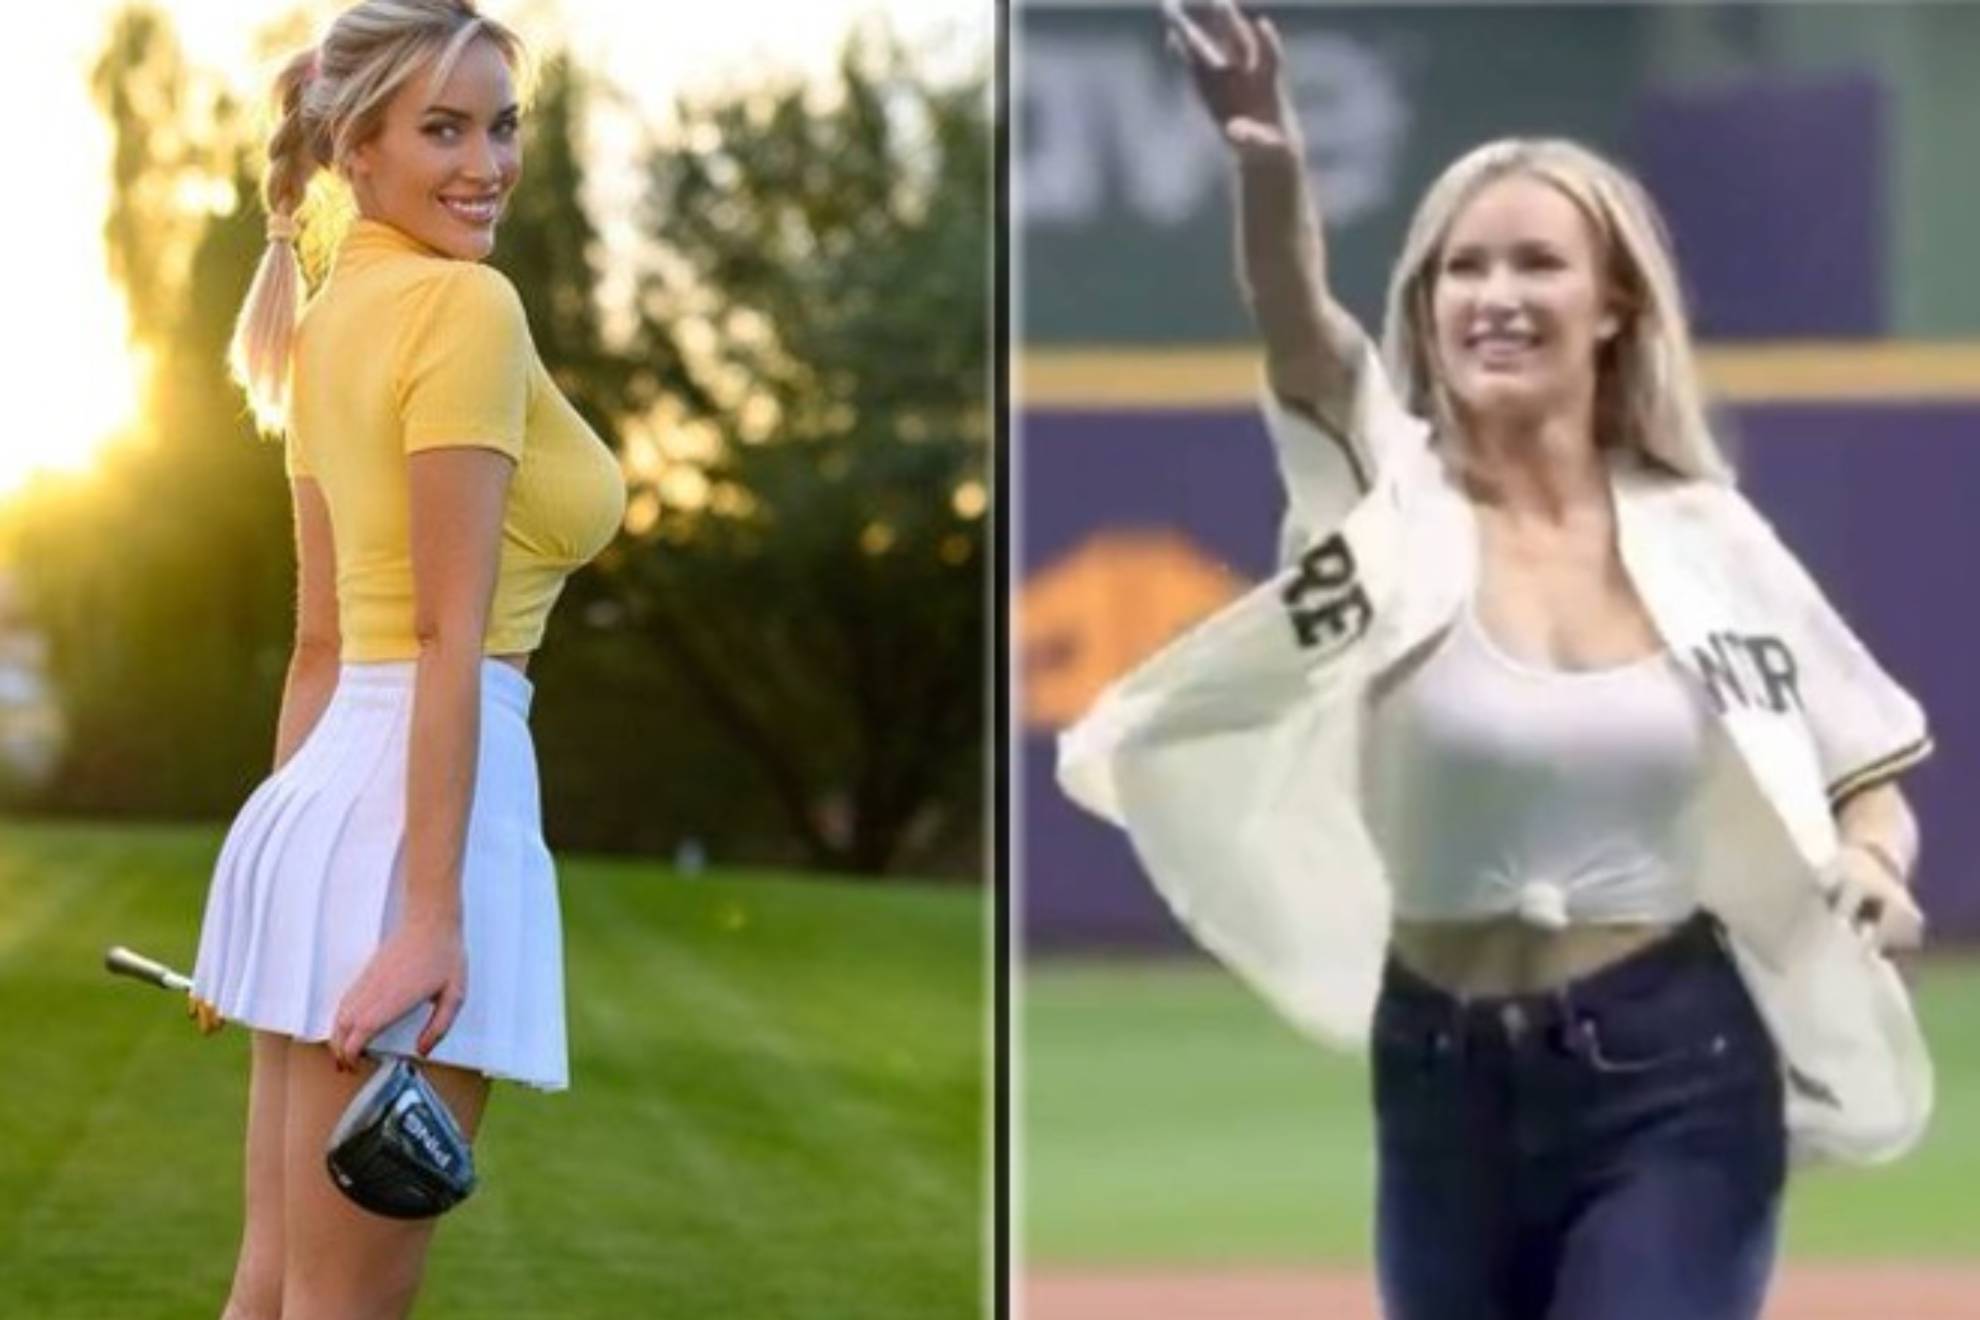 La influencer Paige Spiranac, considerada la golfista ms sexy del mundo, realiz el lanzamiento inicial del partido de la MLB que enfrent a los Milwaukee Brewers con los New York Yankees en el American Family Field.